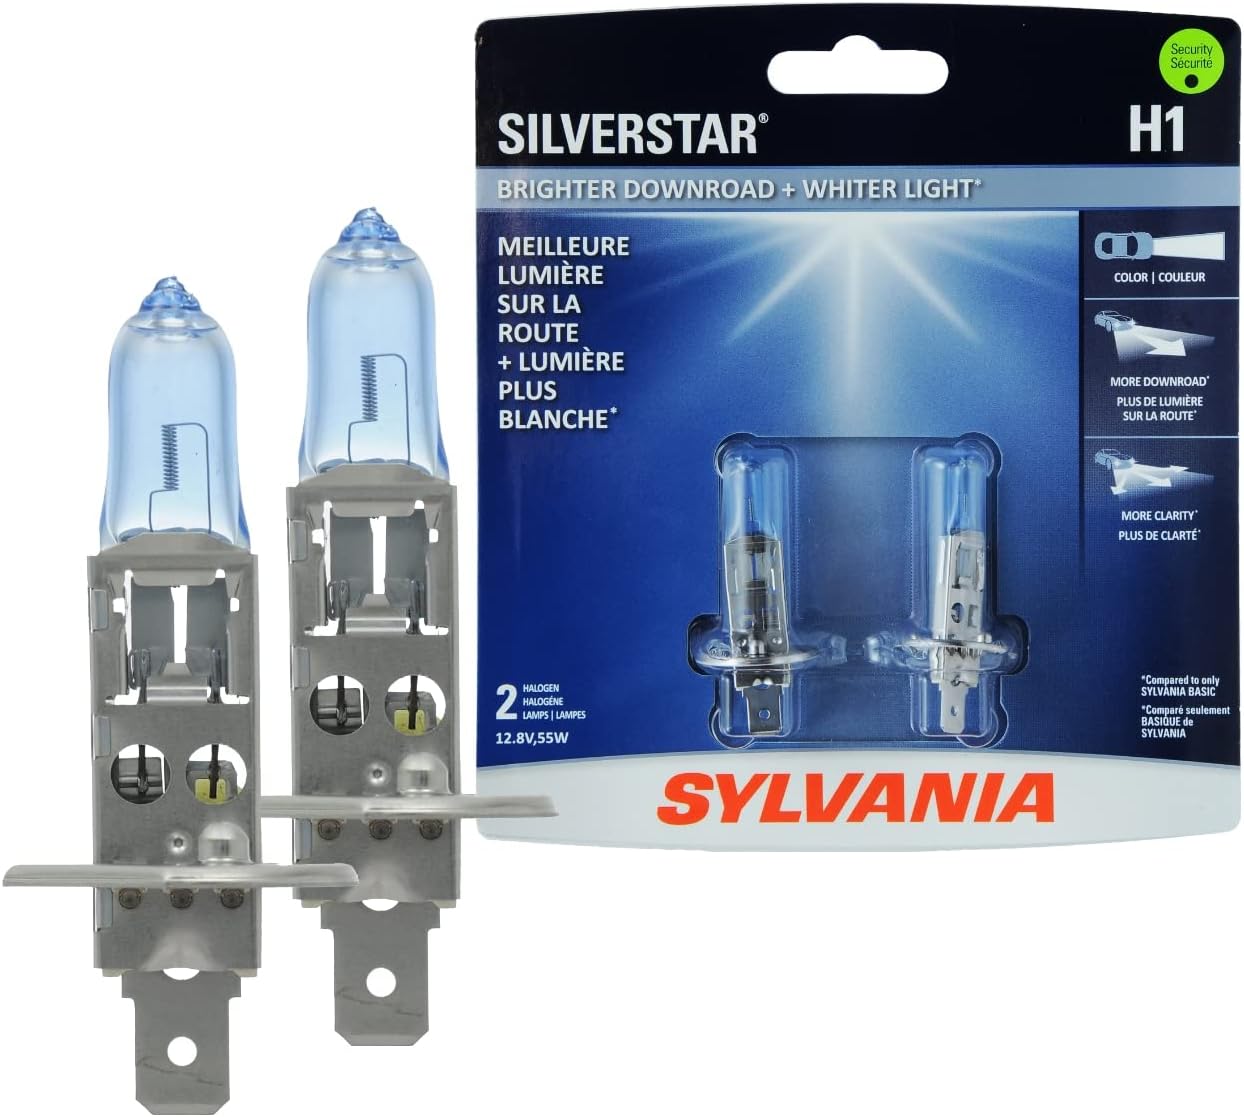 SYLVANIA H1 SilverStar High Performance Halogen Headlight Bulb, (Contains 2 Bulbs)